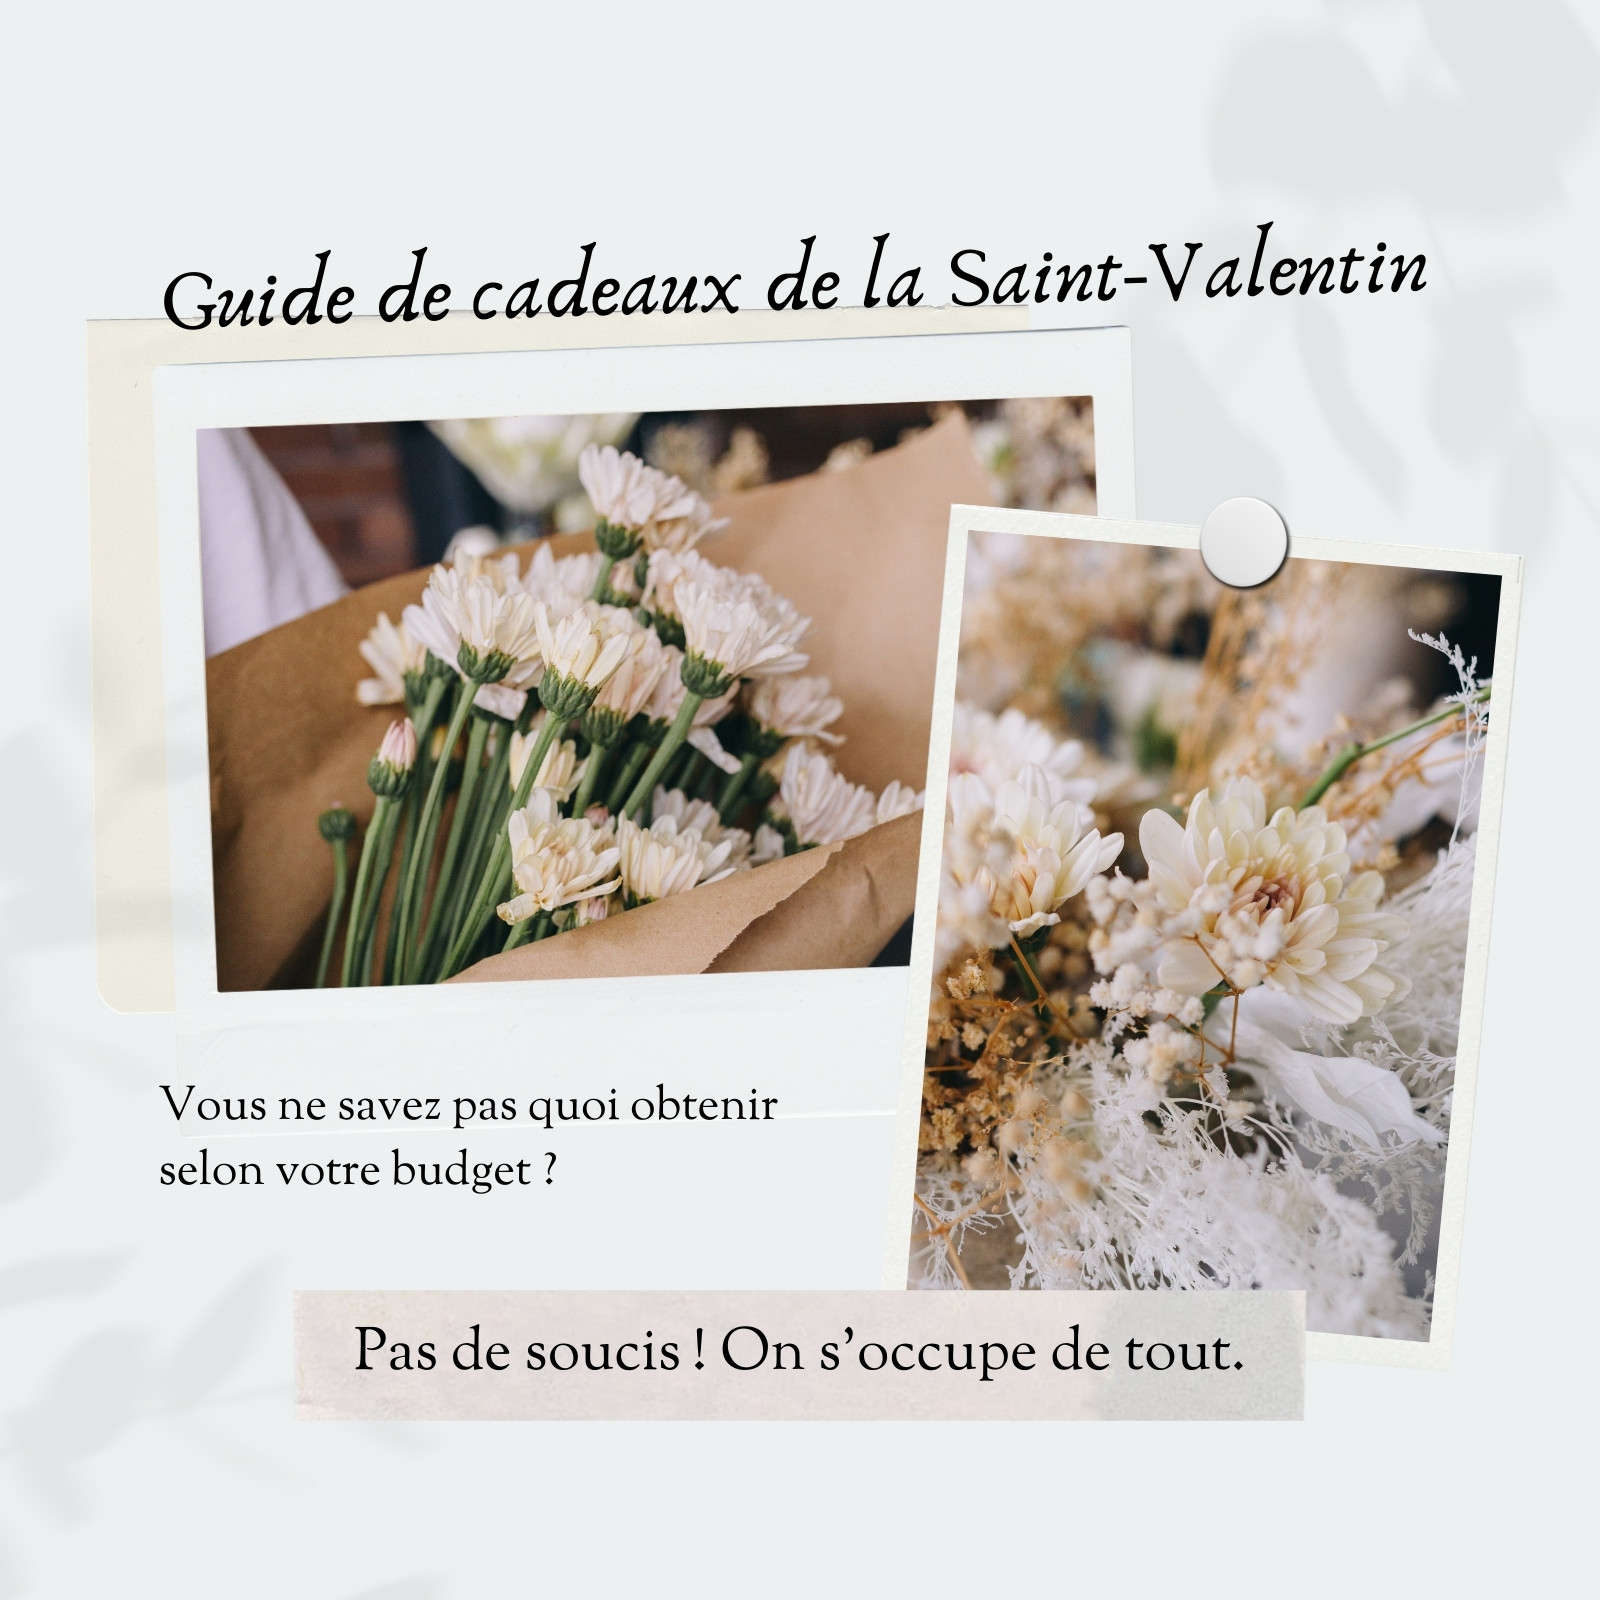 saint valentin : modèles gratuits à personnaliser - Canva